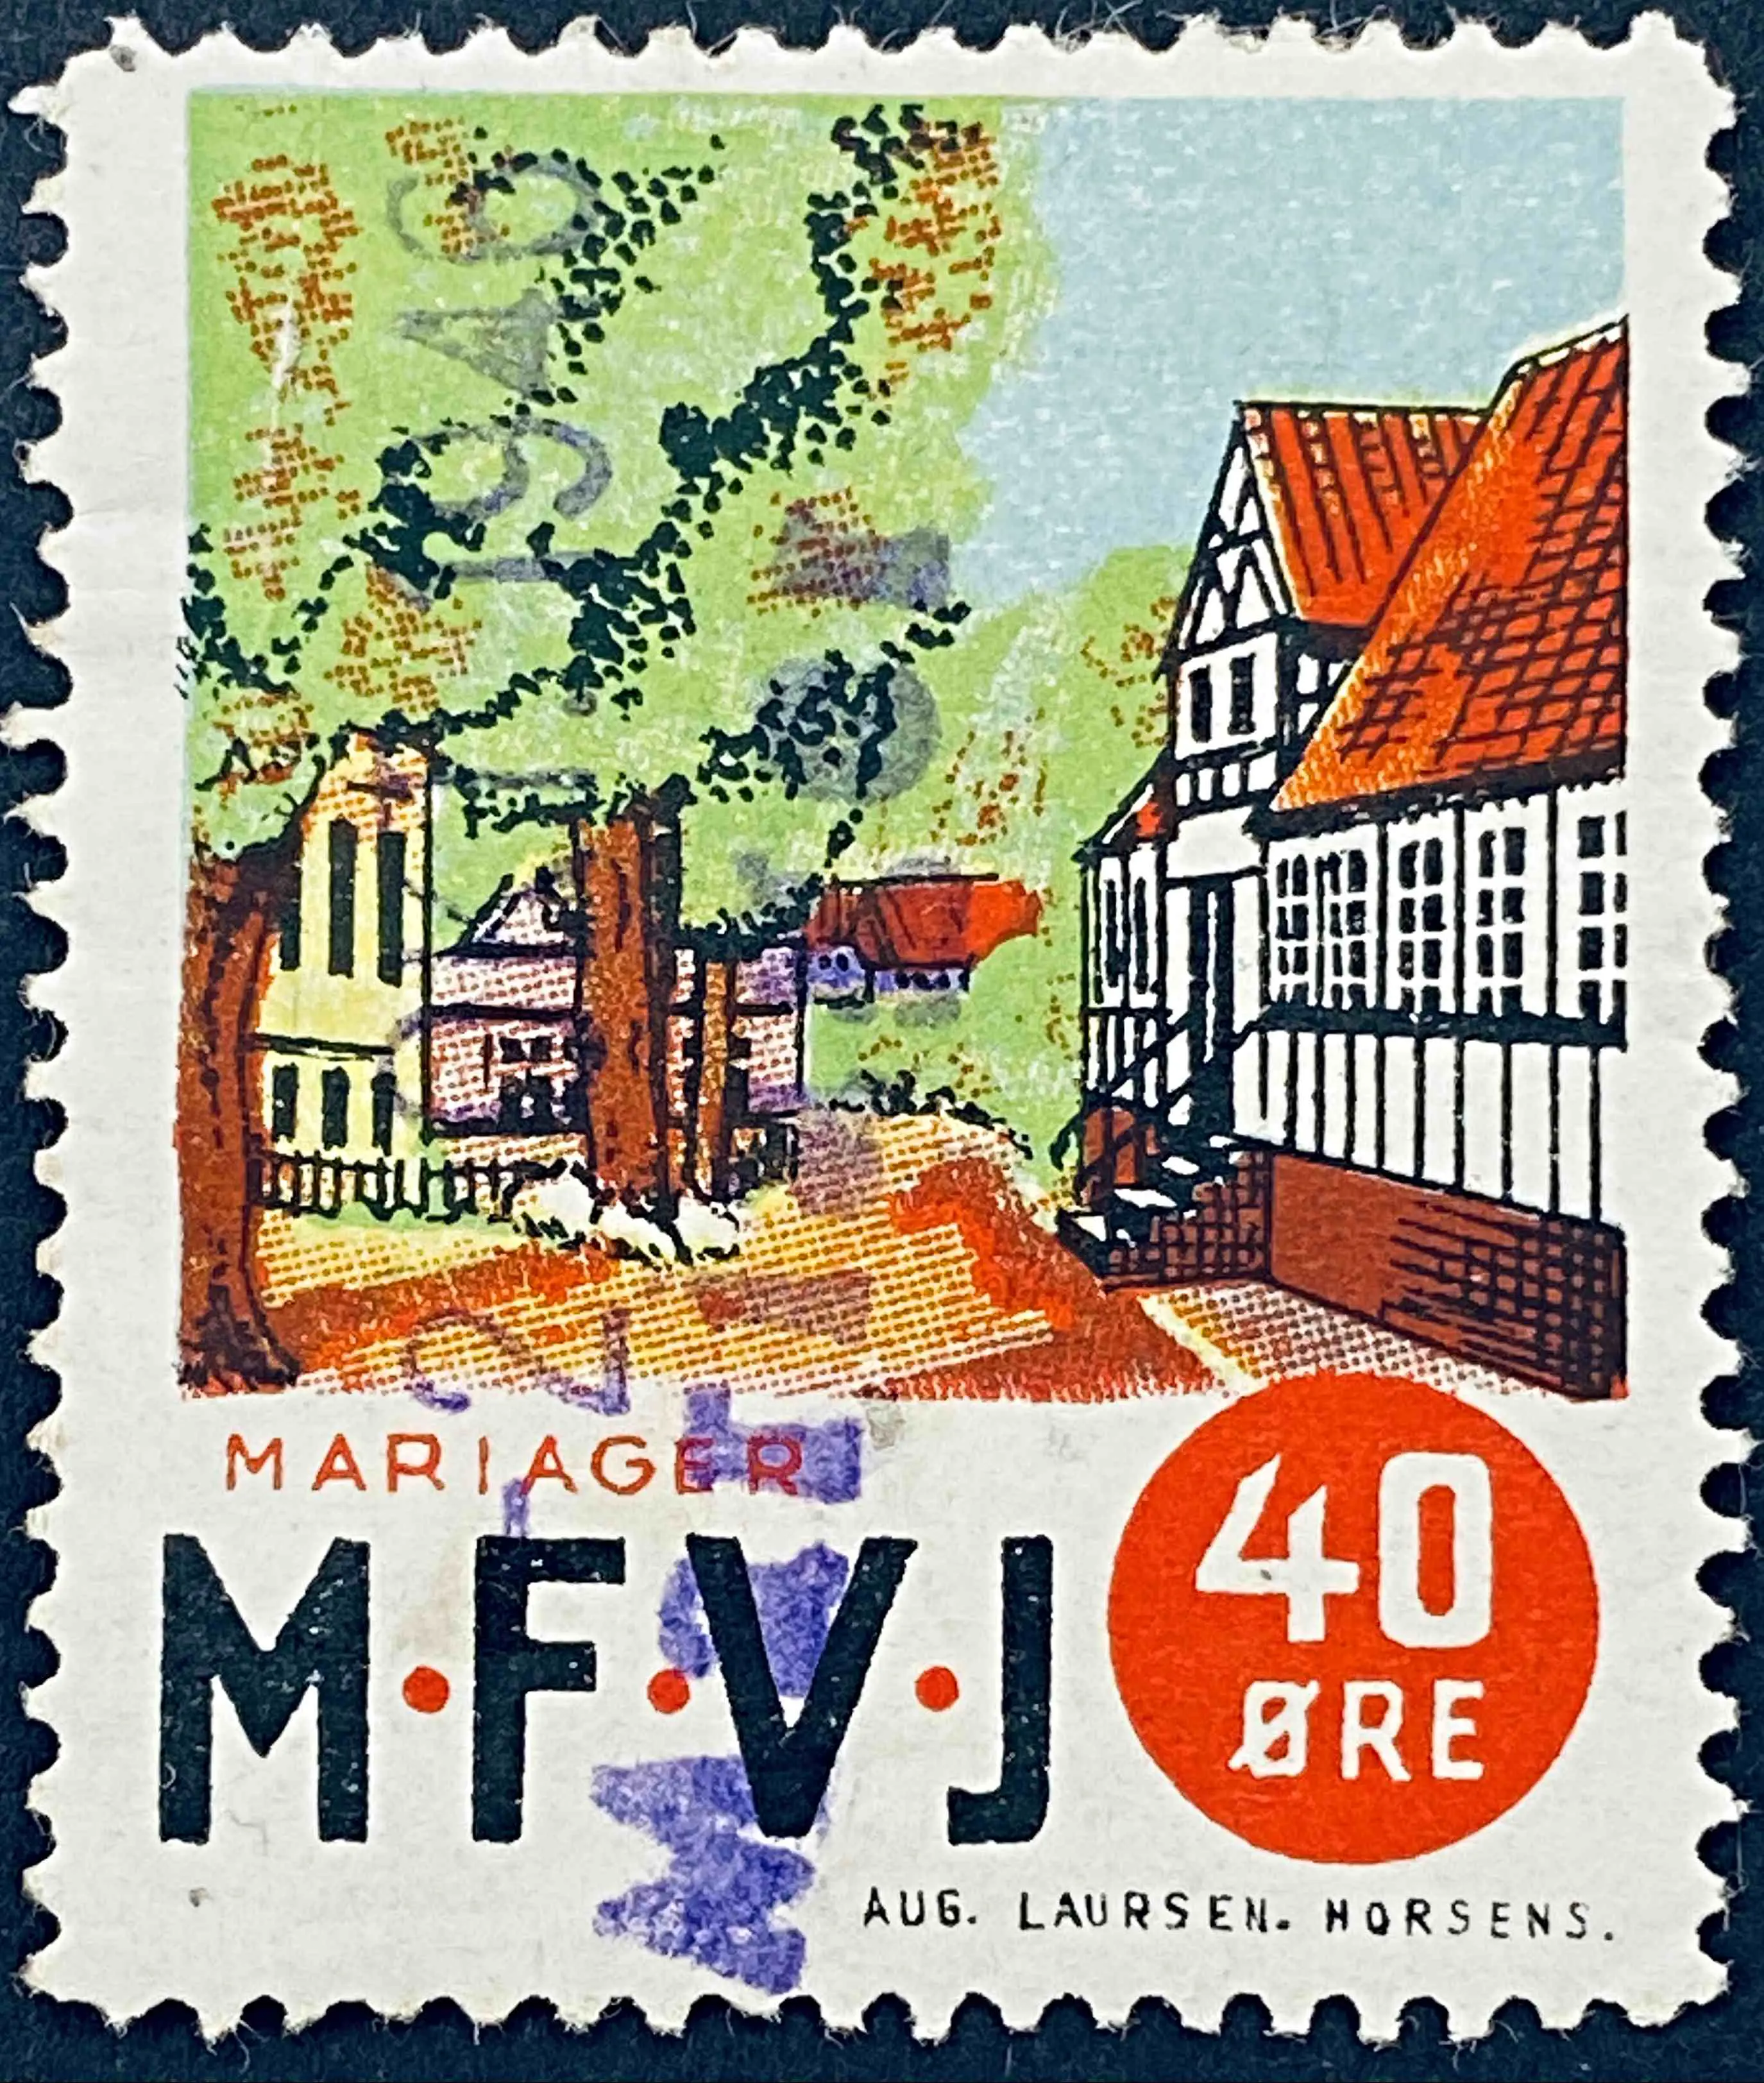 MFVJ 13 - 40 Øre Motiv: Mariager Torv - Flerfarvet - trykkeri: Aug Laursen: Horsens - stemplet på Mariager Station (Mrg (Mr)).